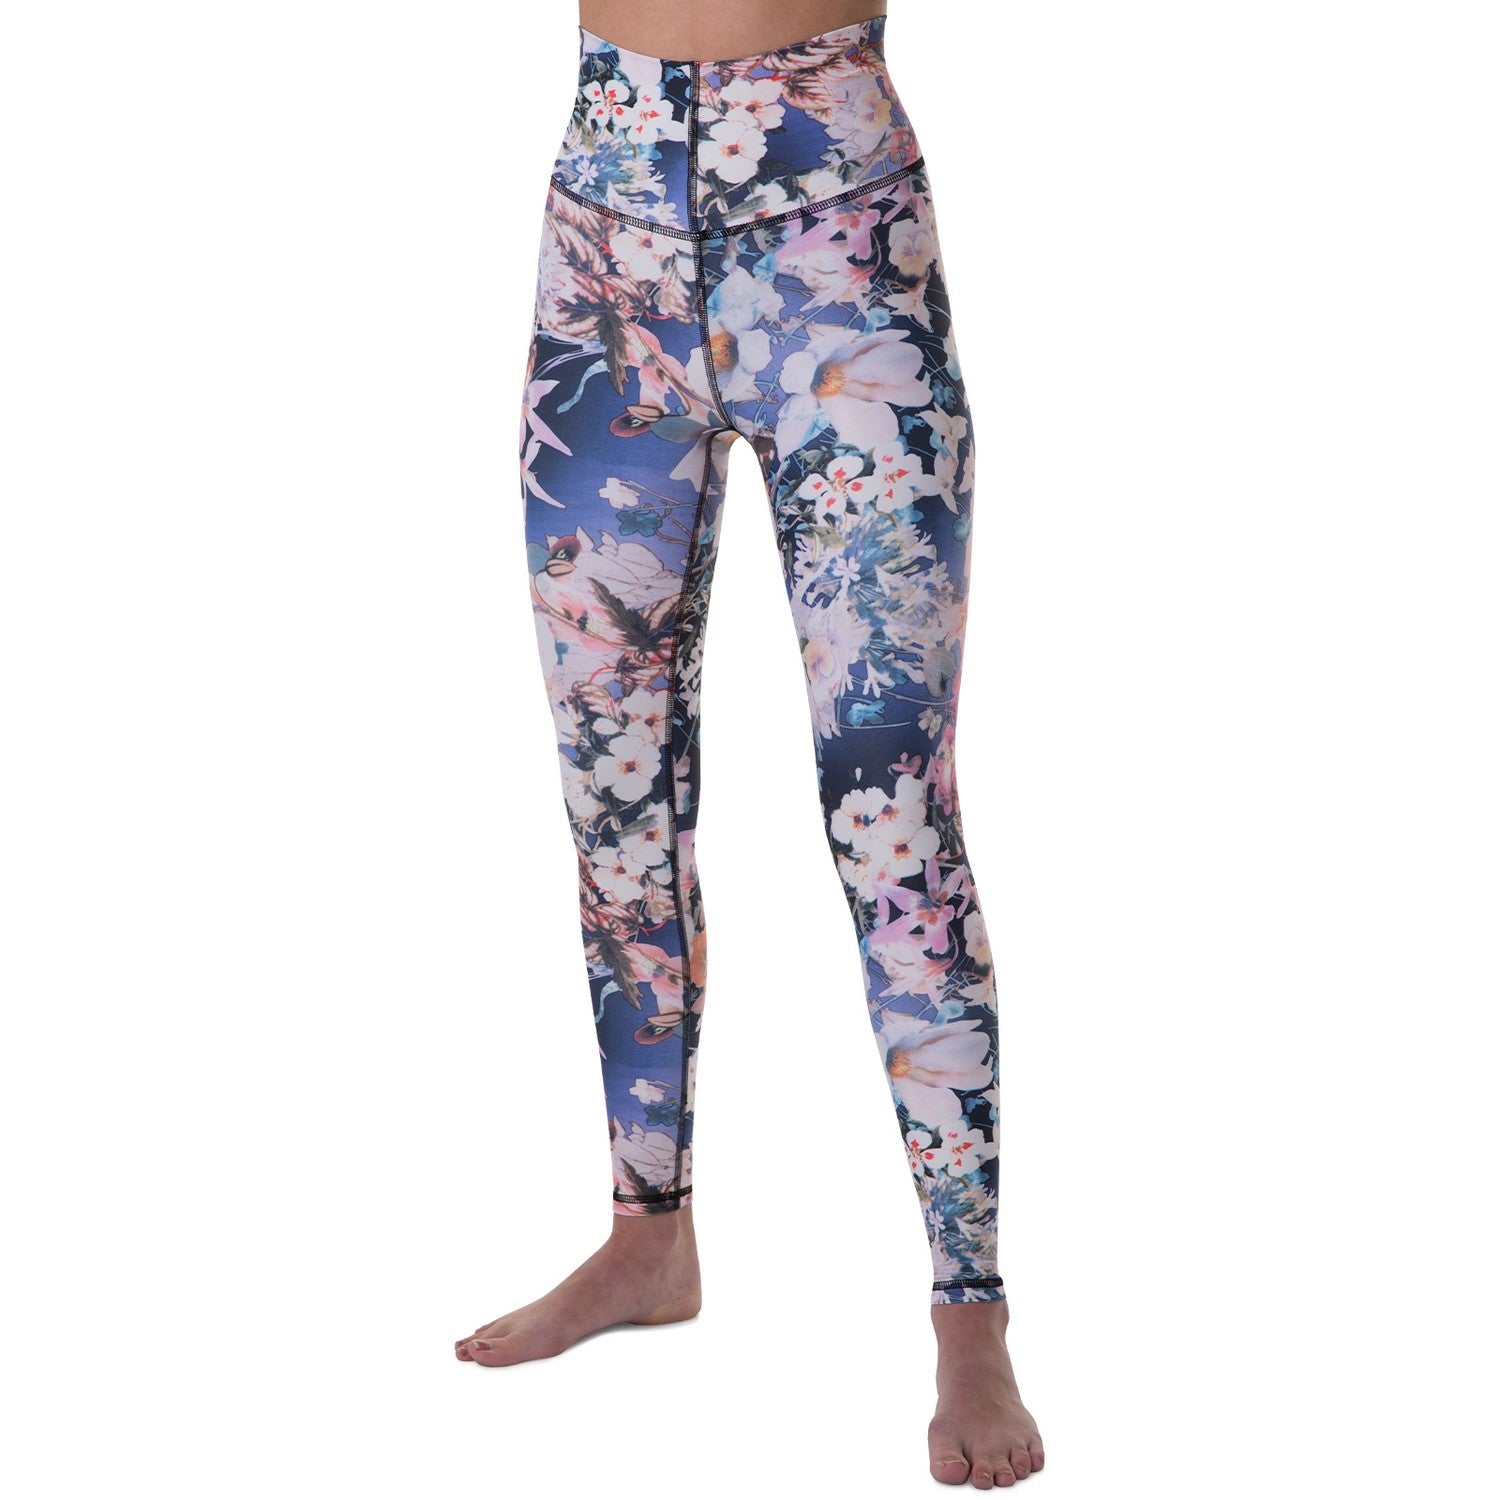 Blackstrap Women's Pinnacle Baselayer Pant Floral Retro Base Layer Pants